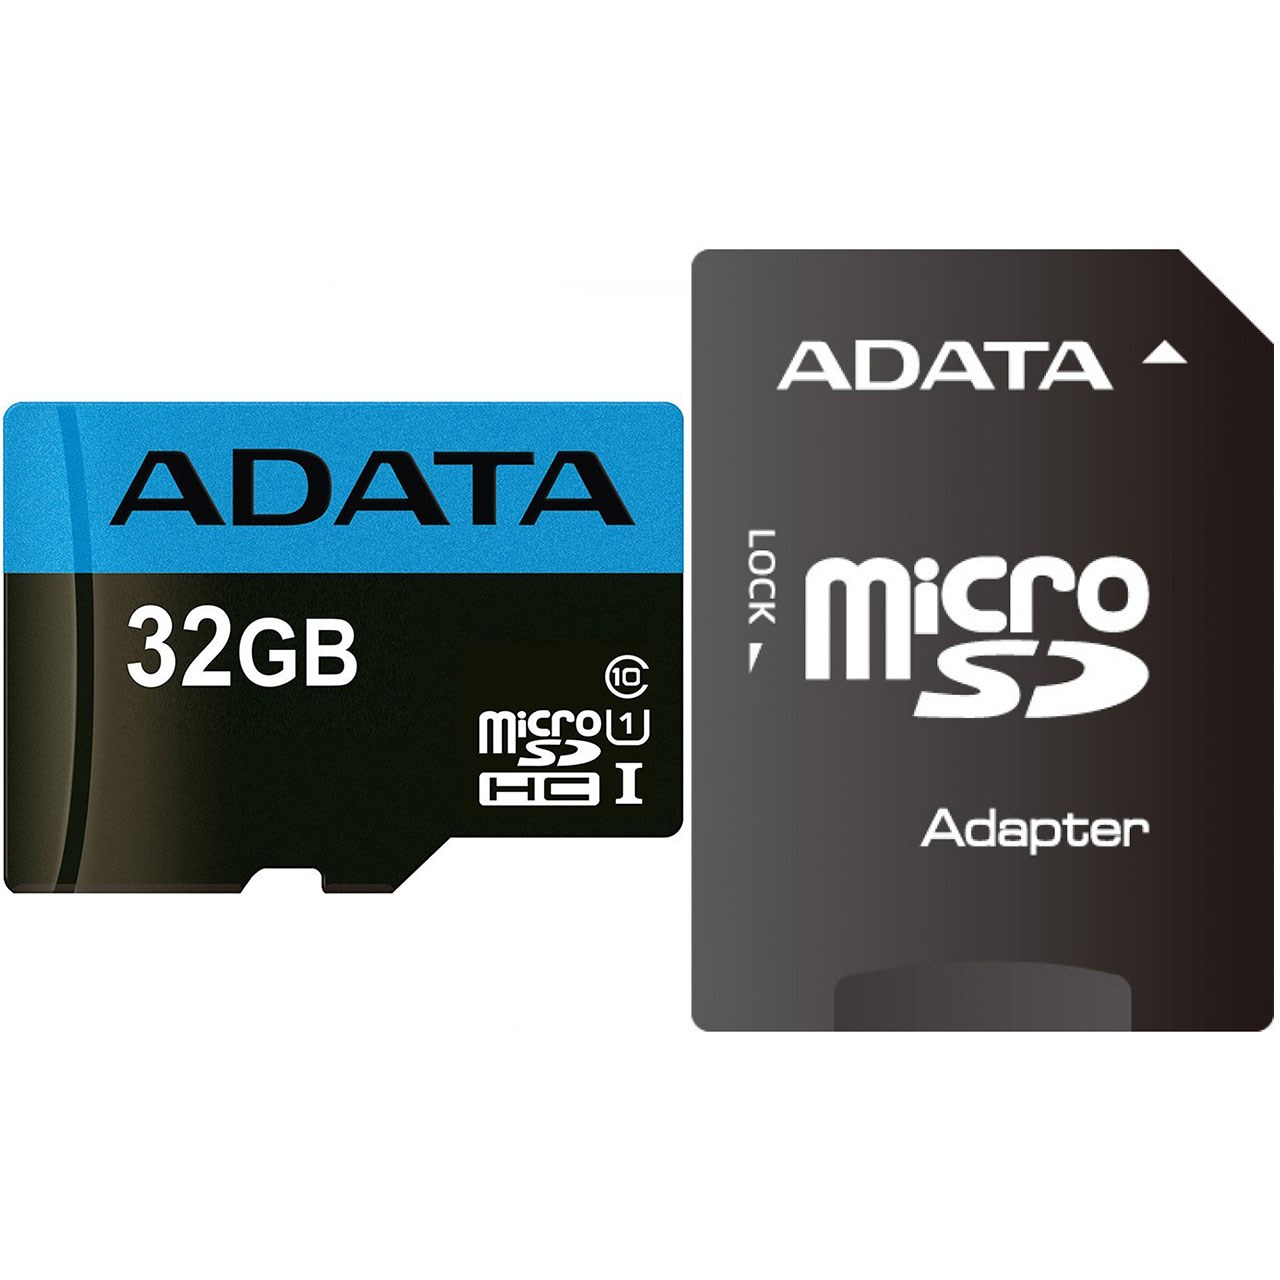 کارت حافظه microSDHC ای دیتا مدل Premier کلاس 10 استاندارد UHS-I U1 سرعت 85MBps همراه با آداپتور SD ظرفیت 32 گیگابایت